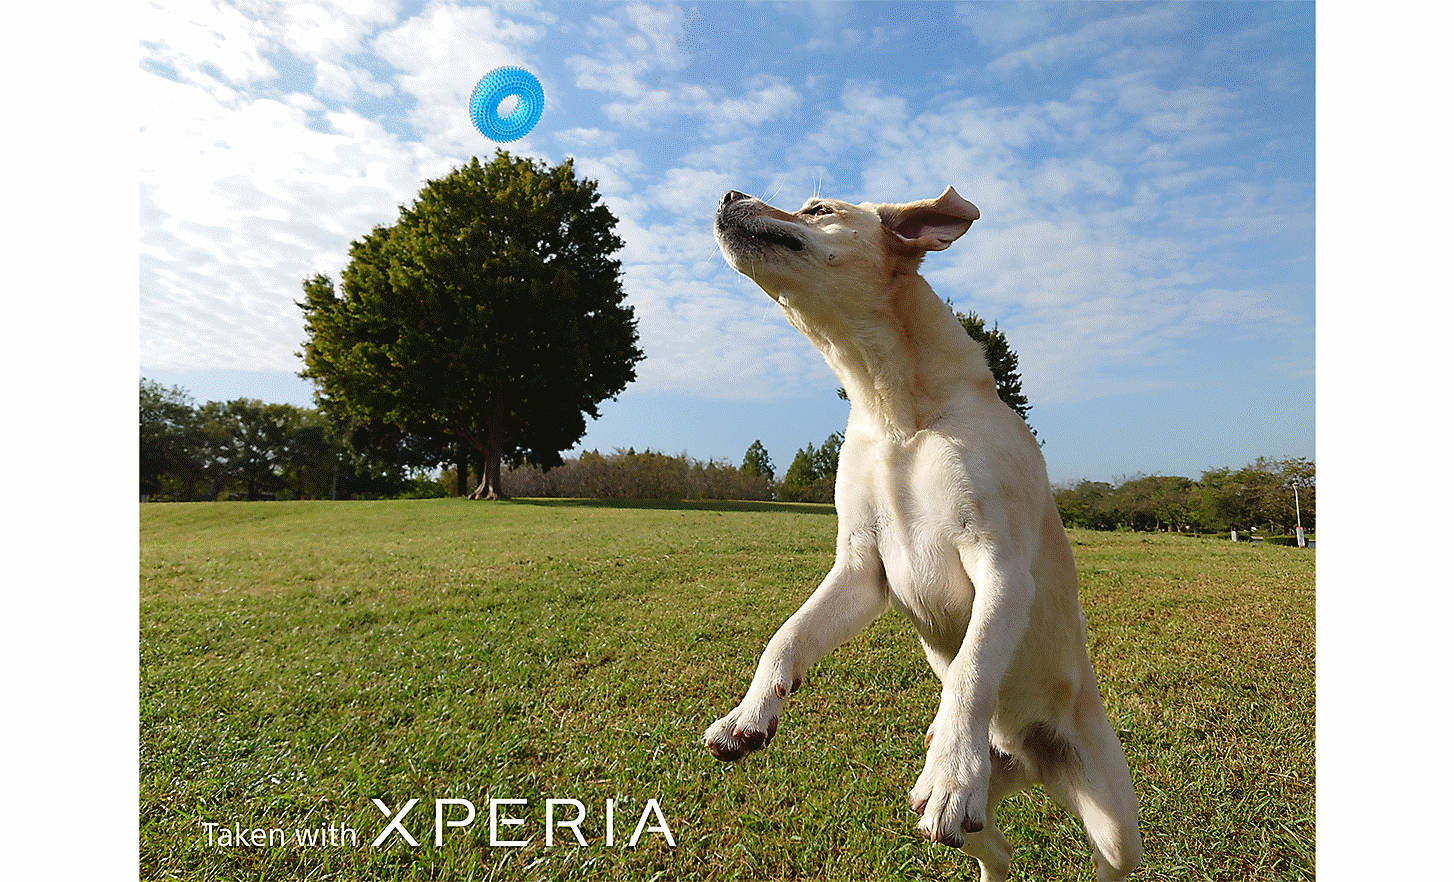 一隻狗在田間跳躍要捕捉藍色玩具的動態畫面。寫著「使用 XPERIA 拍攝」的文字。